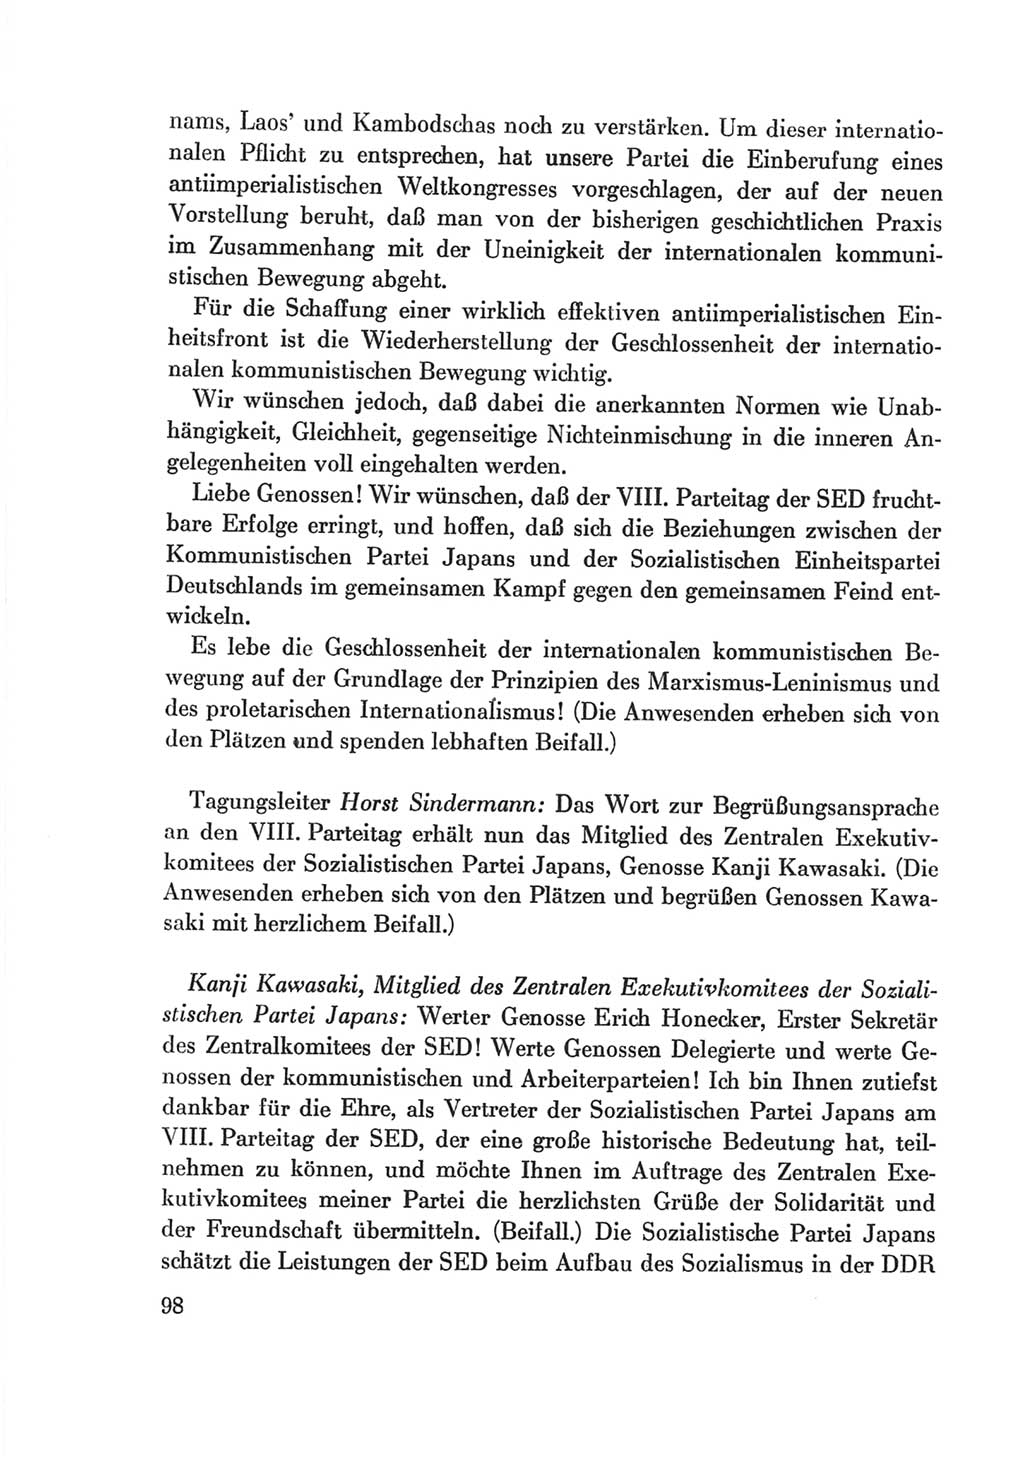 Protokoll der Verhandlungen des Ⅷ. Parteitages der Sozialistischen Einheitspartei Deutschlands (SED) [Deutsche Demokratische Republik (DDR)] 1971, Band 2, Seite 98 (Prot. Verh. Ⅷ. PT SED DDR 1971, Bd. 2, S. 98)